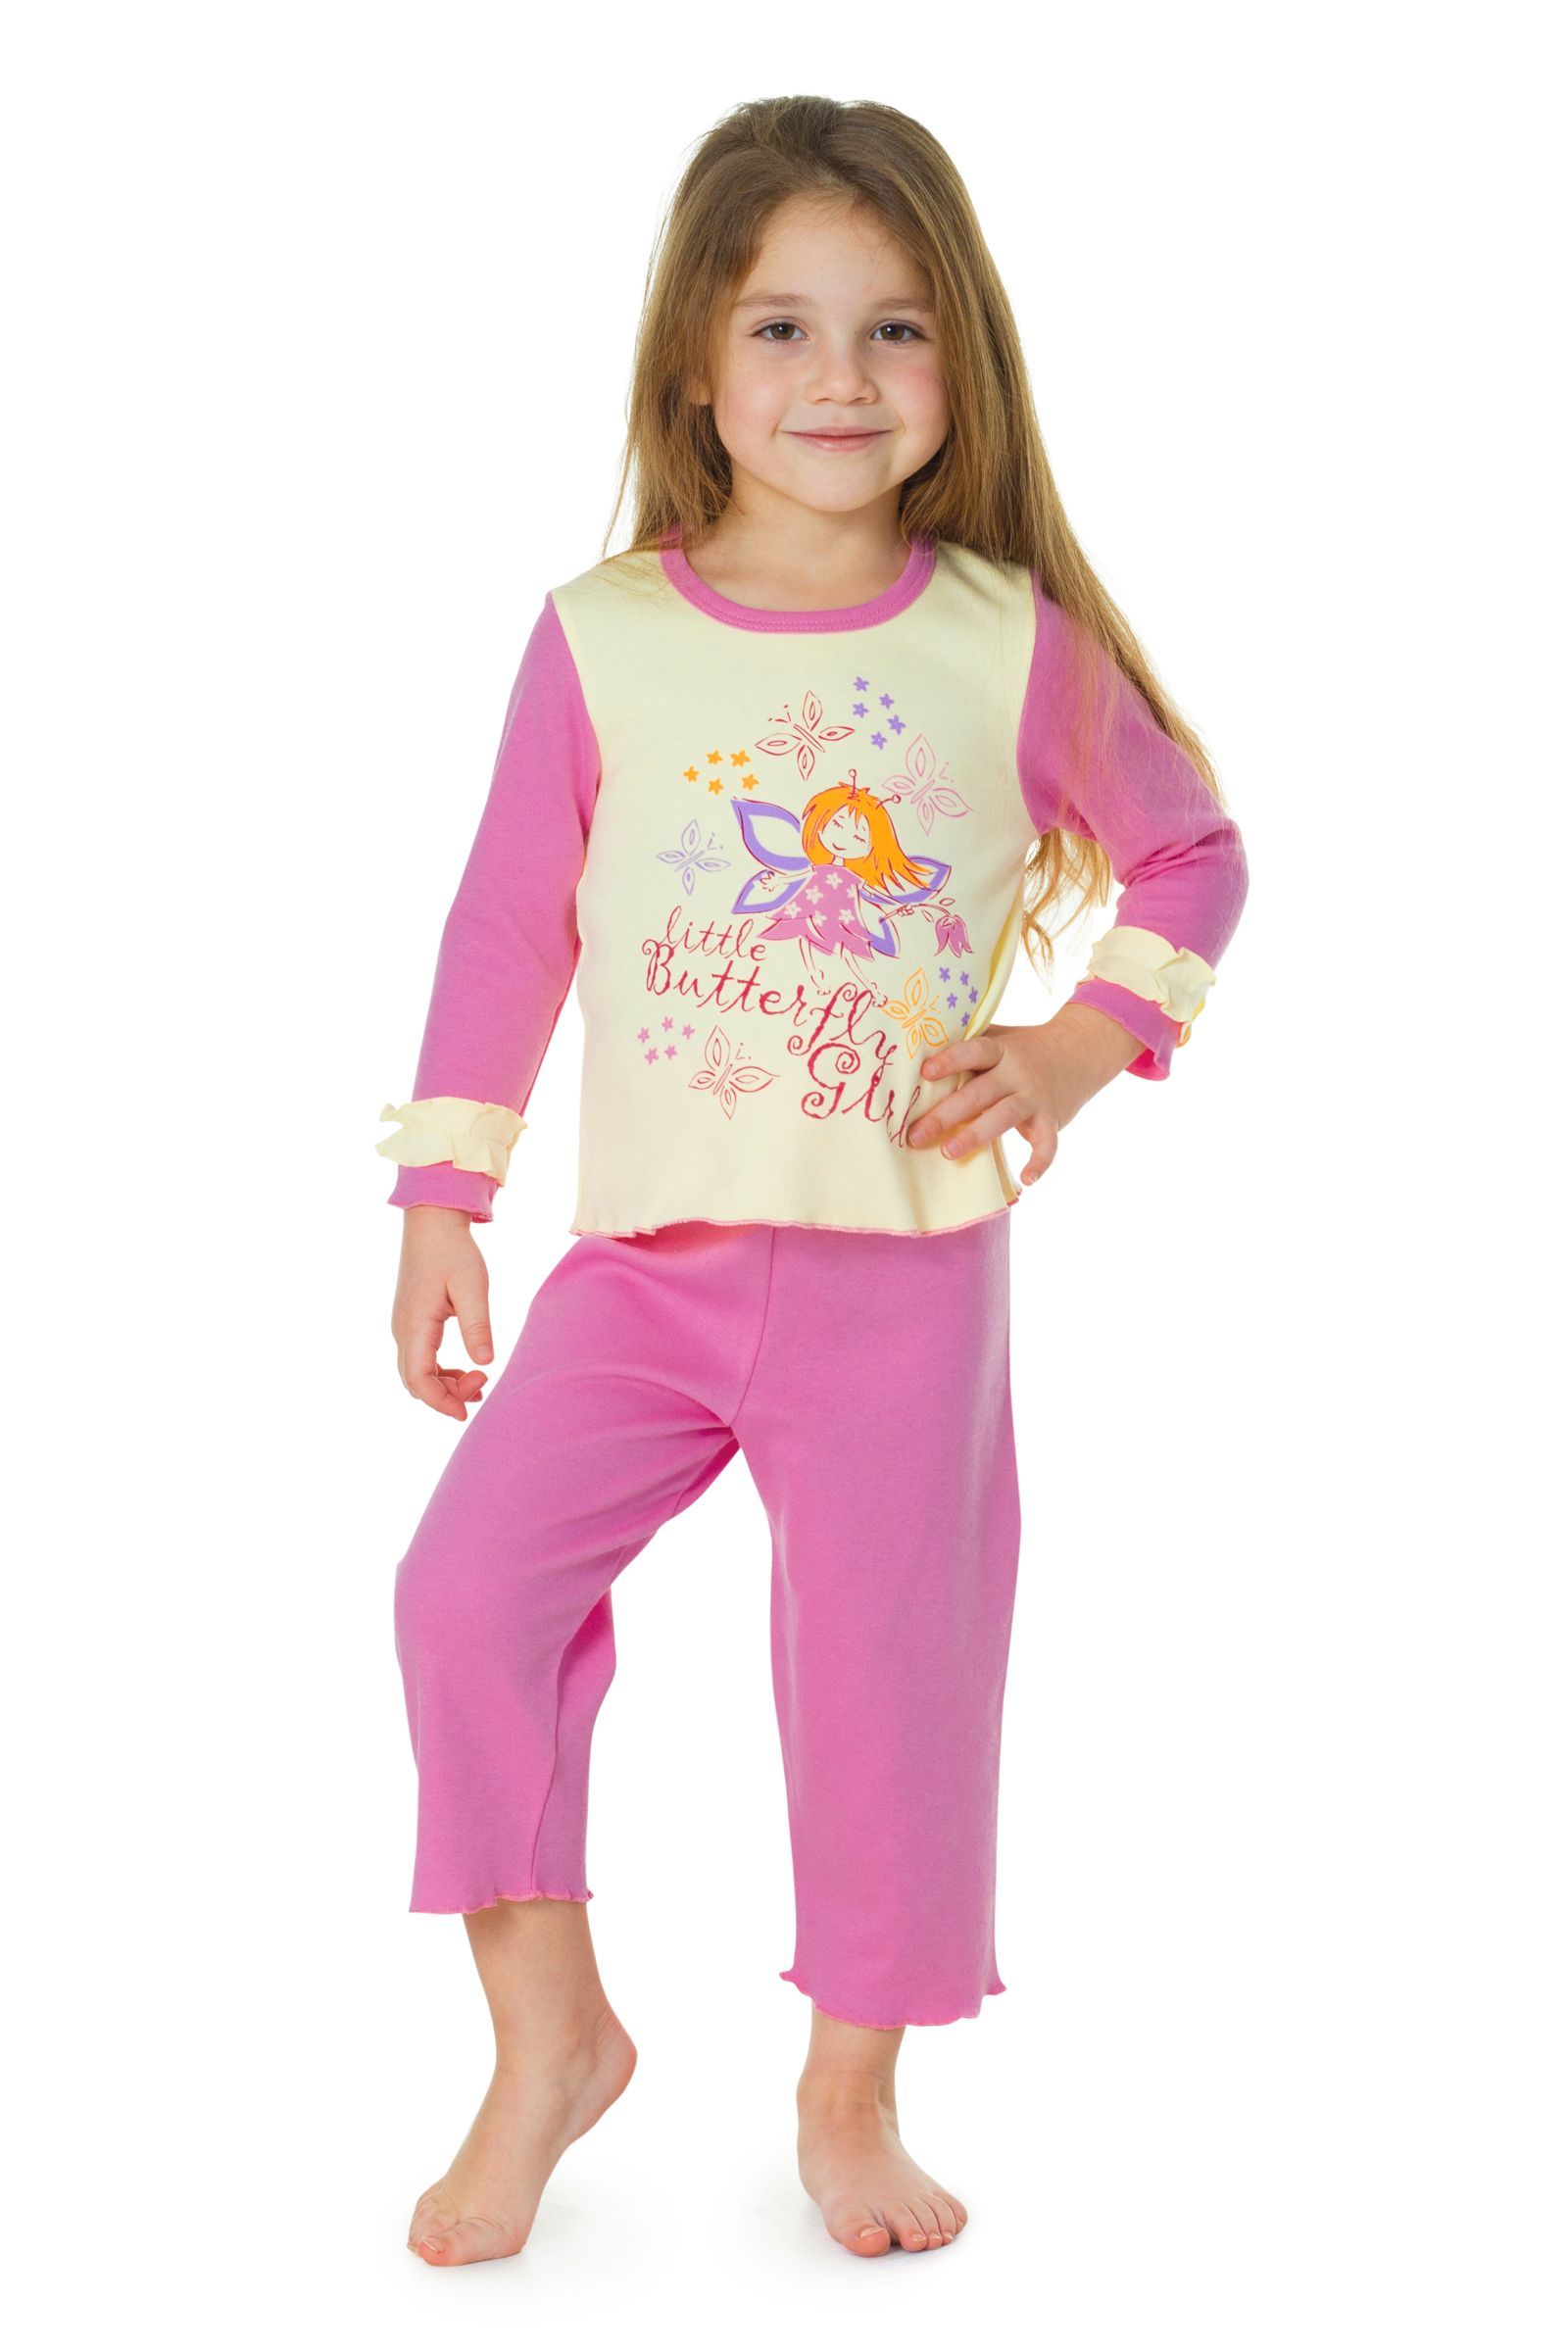 Пижама-ПЖ01-1235 оптом от производителя детской одежды 'Алёна'